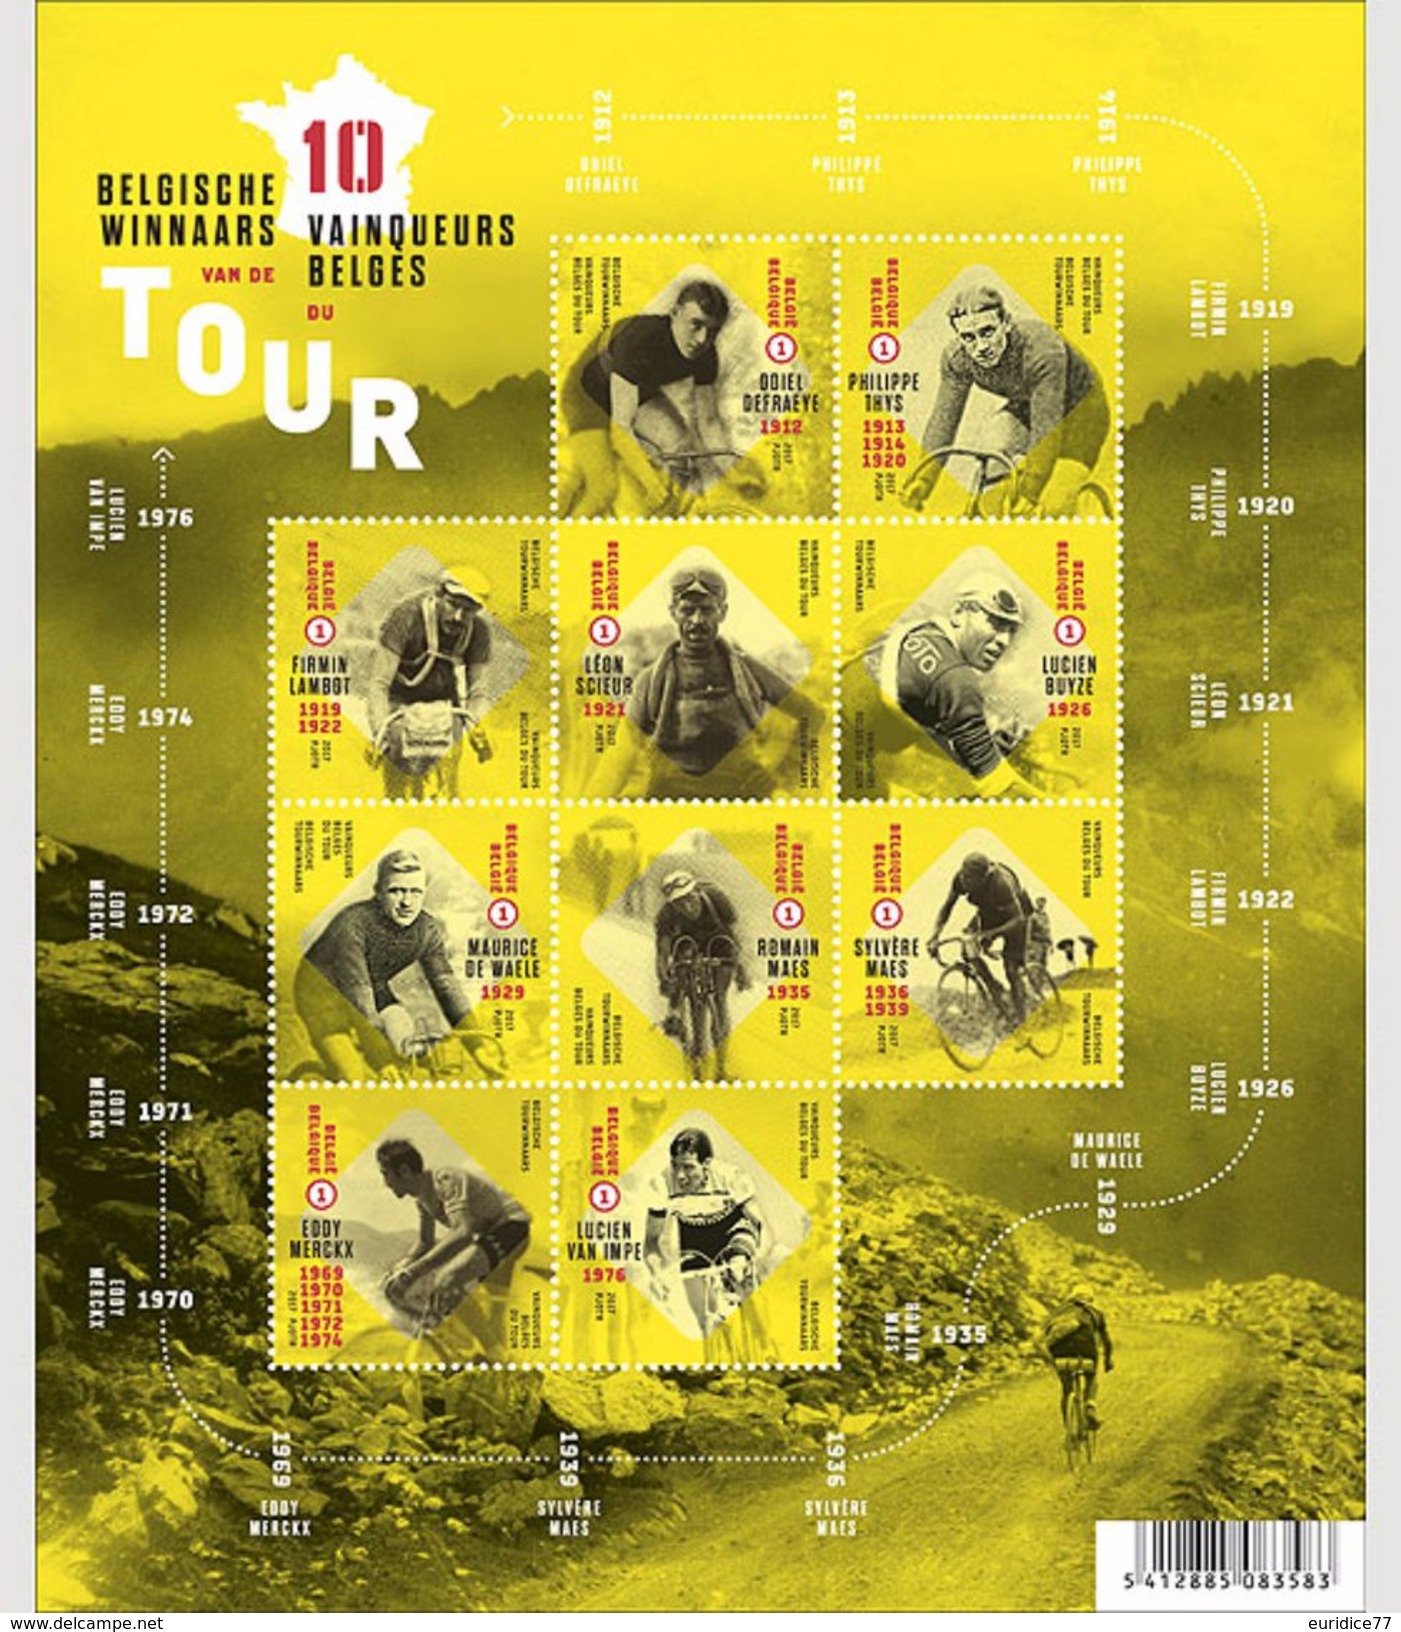 Belgium 2017 - Belgian Tour Winners Souvenir Sheet Mnh - Neufs